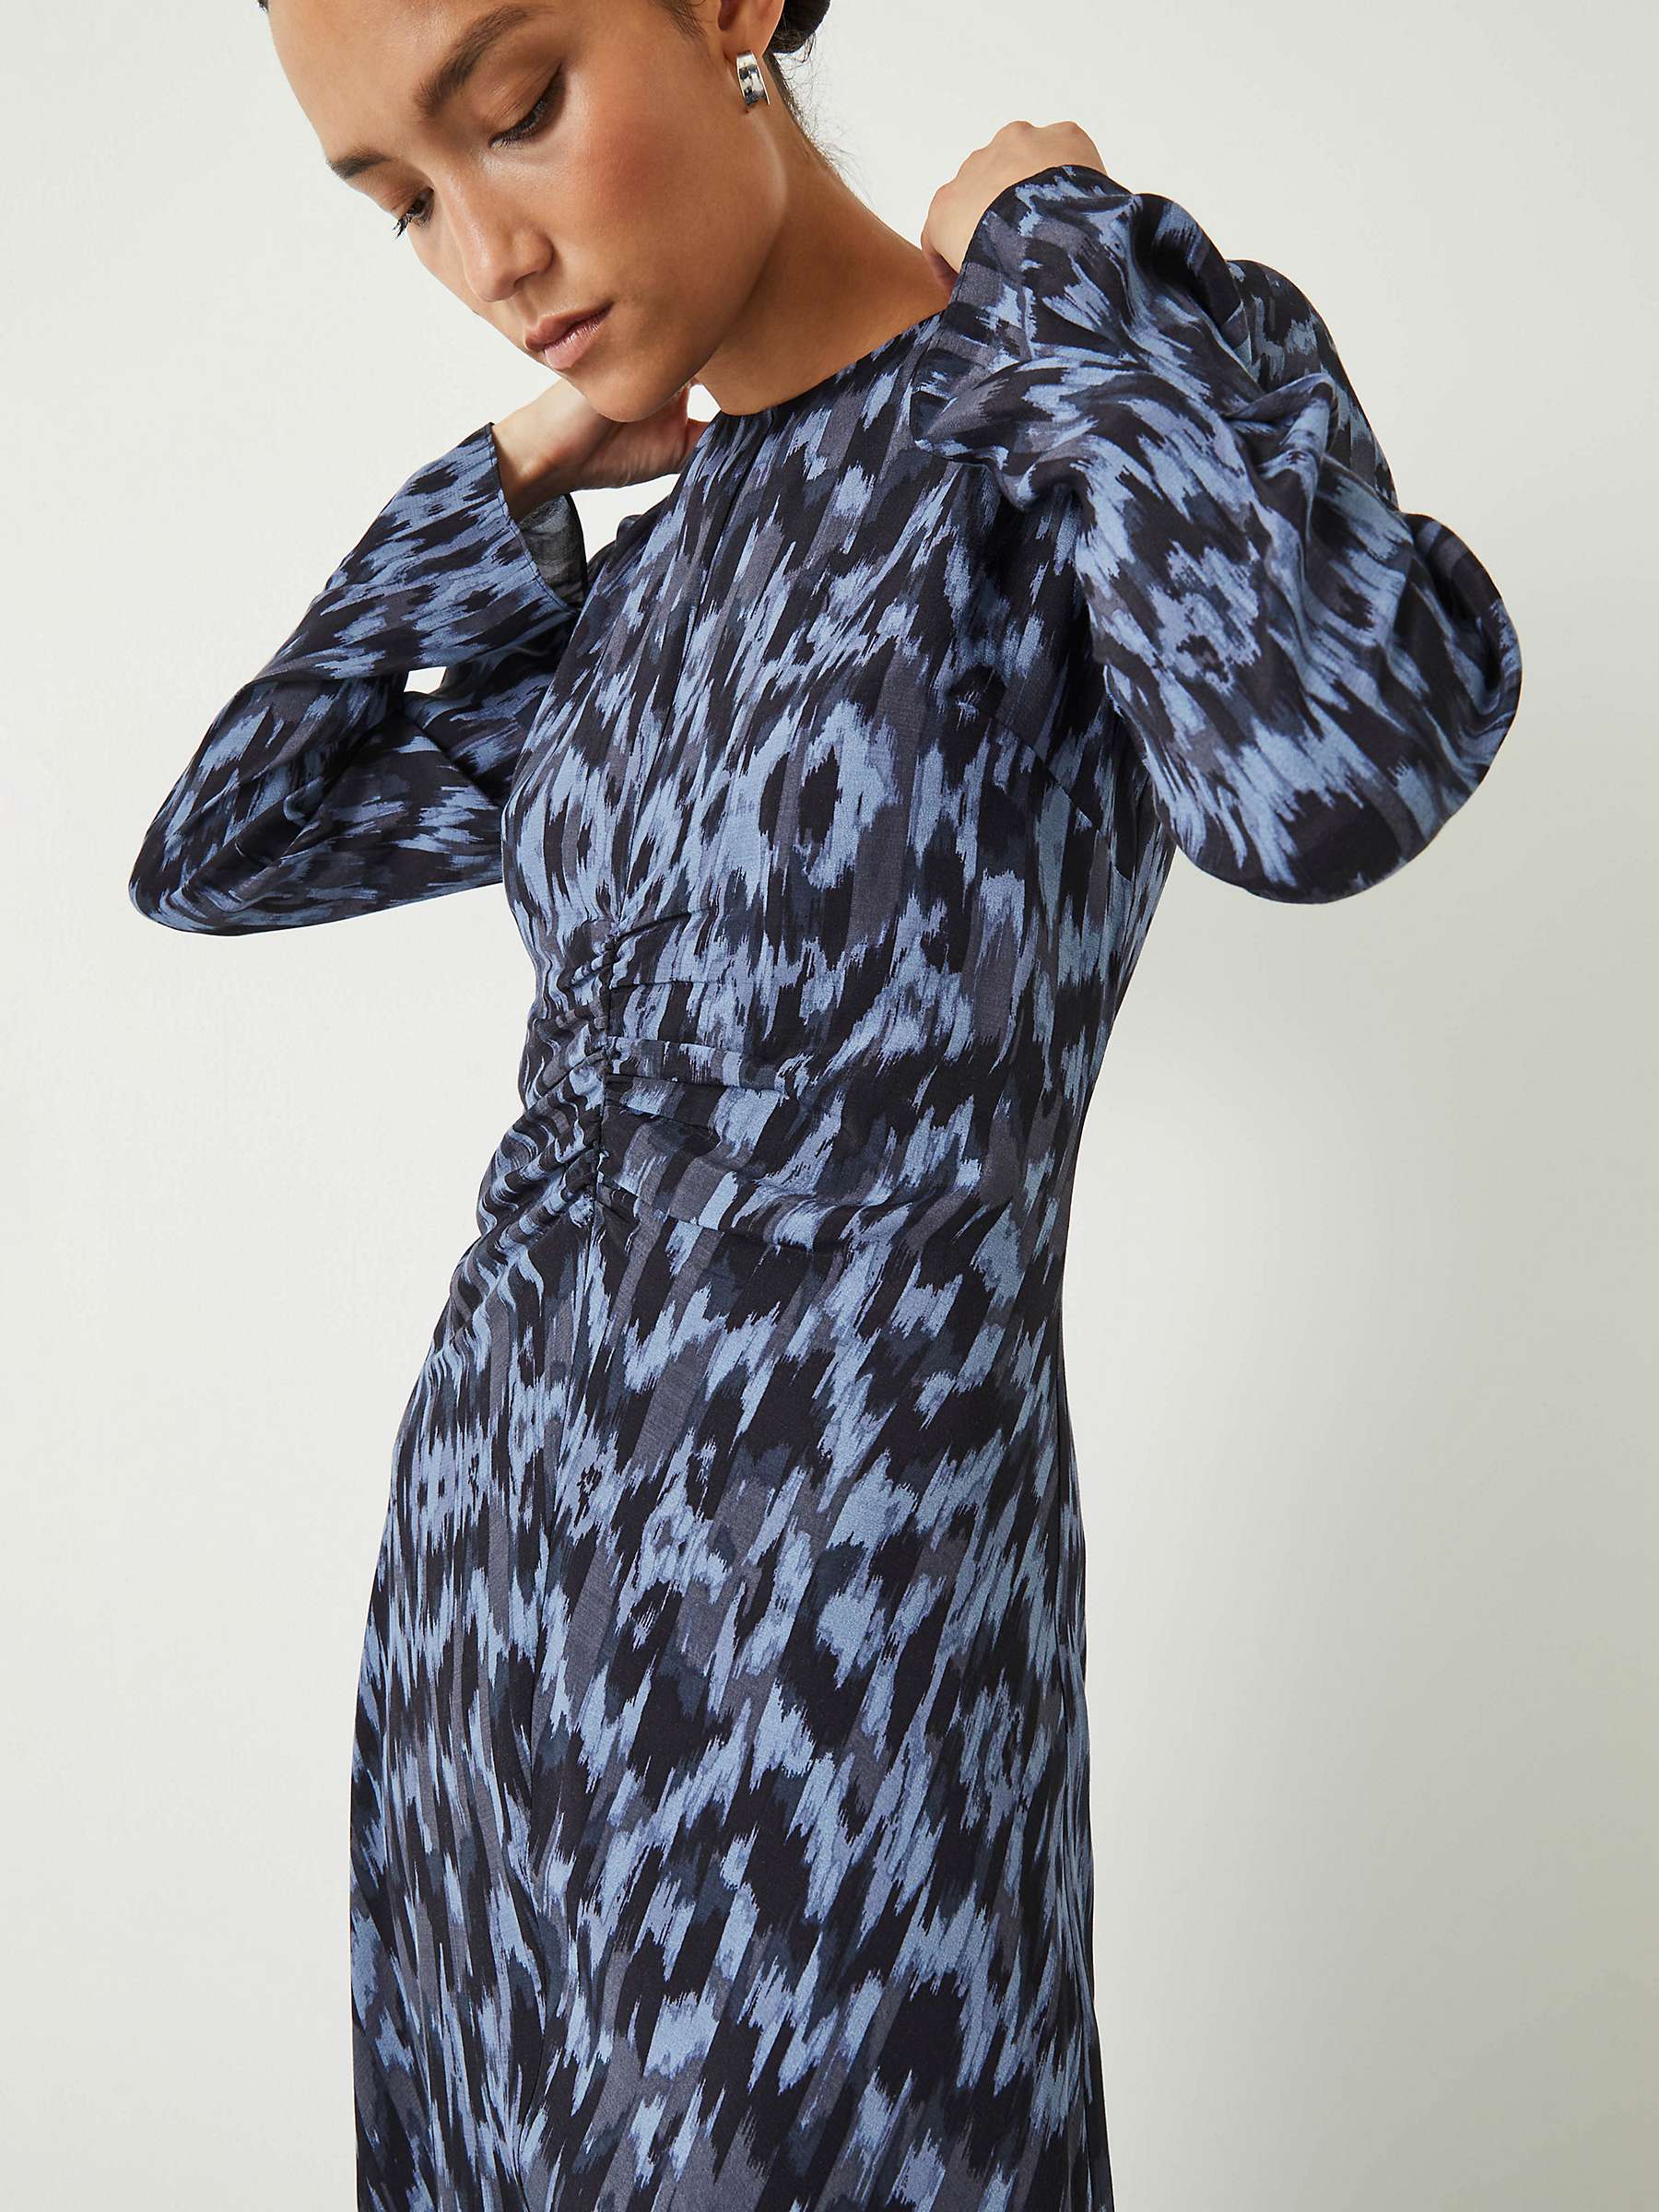 HUSH Myrah Ikat Print Midi Dress, Blue/Multi at John Lewis & Partners